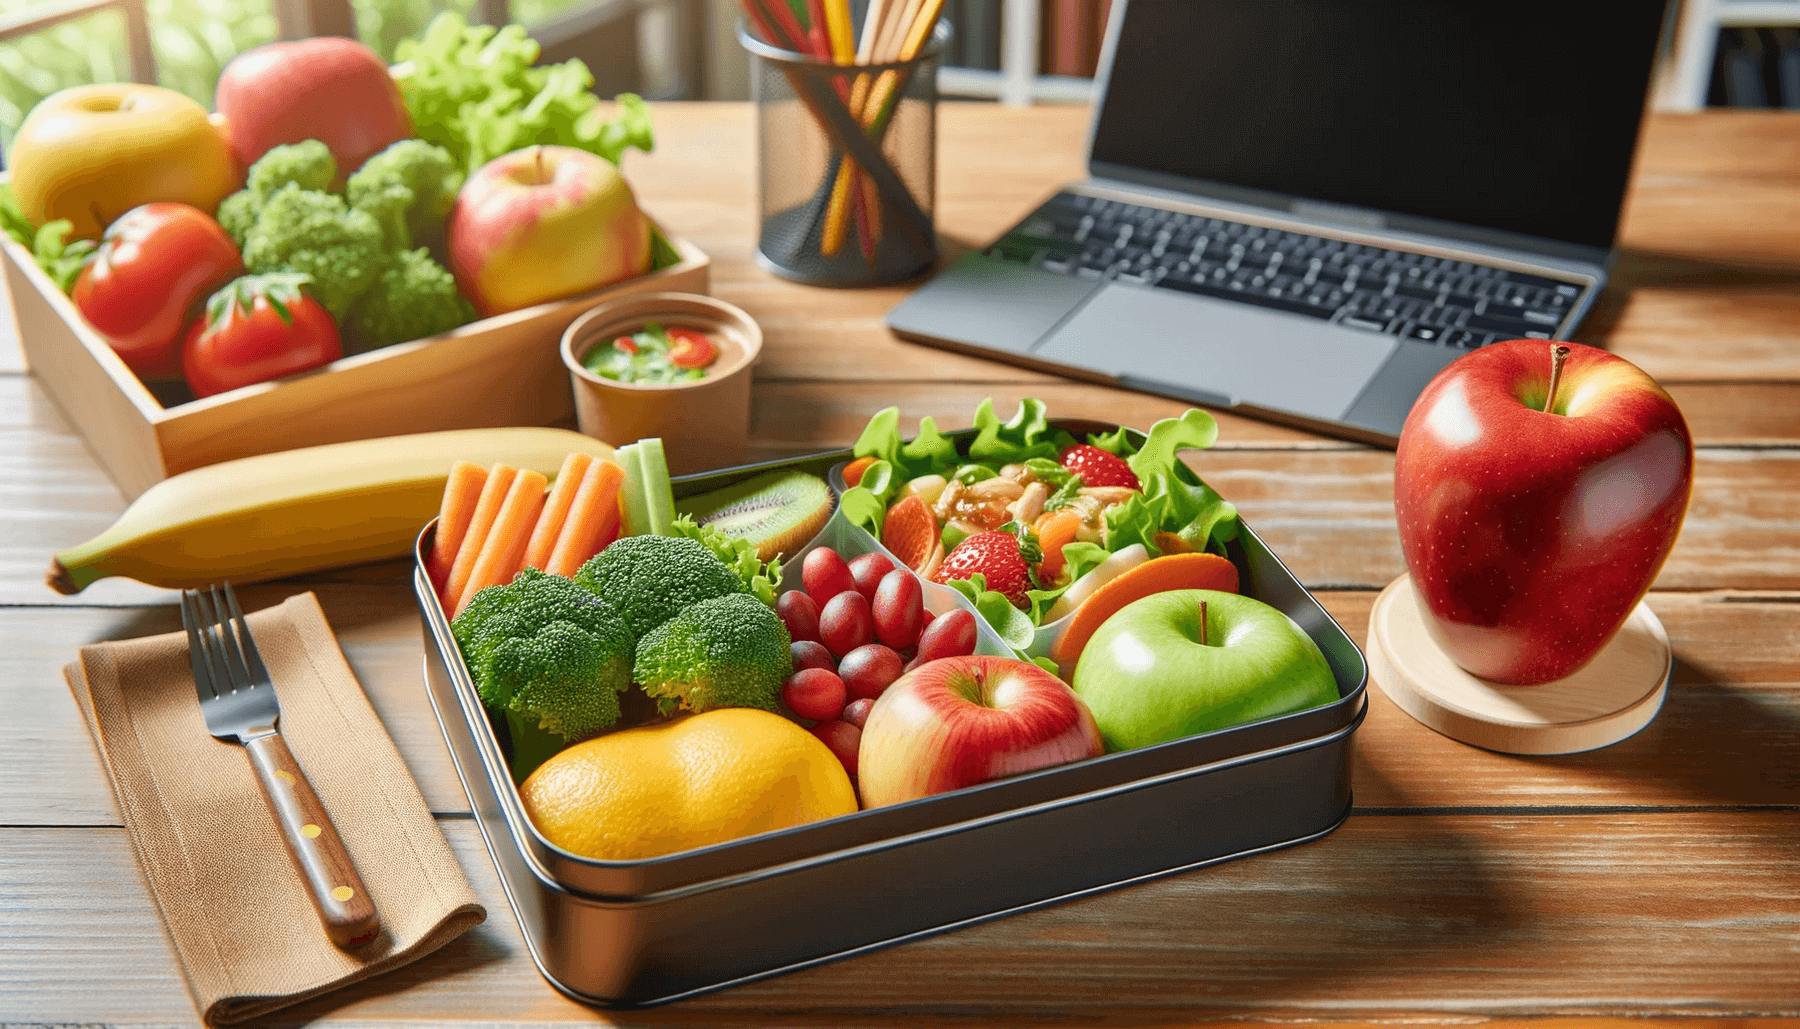 обеды в офисе и устойчивое потребление: выбор экологических продуктов.